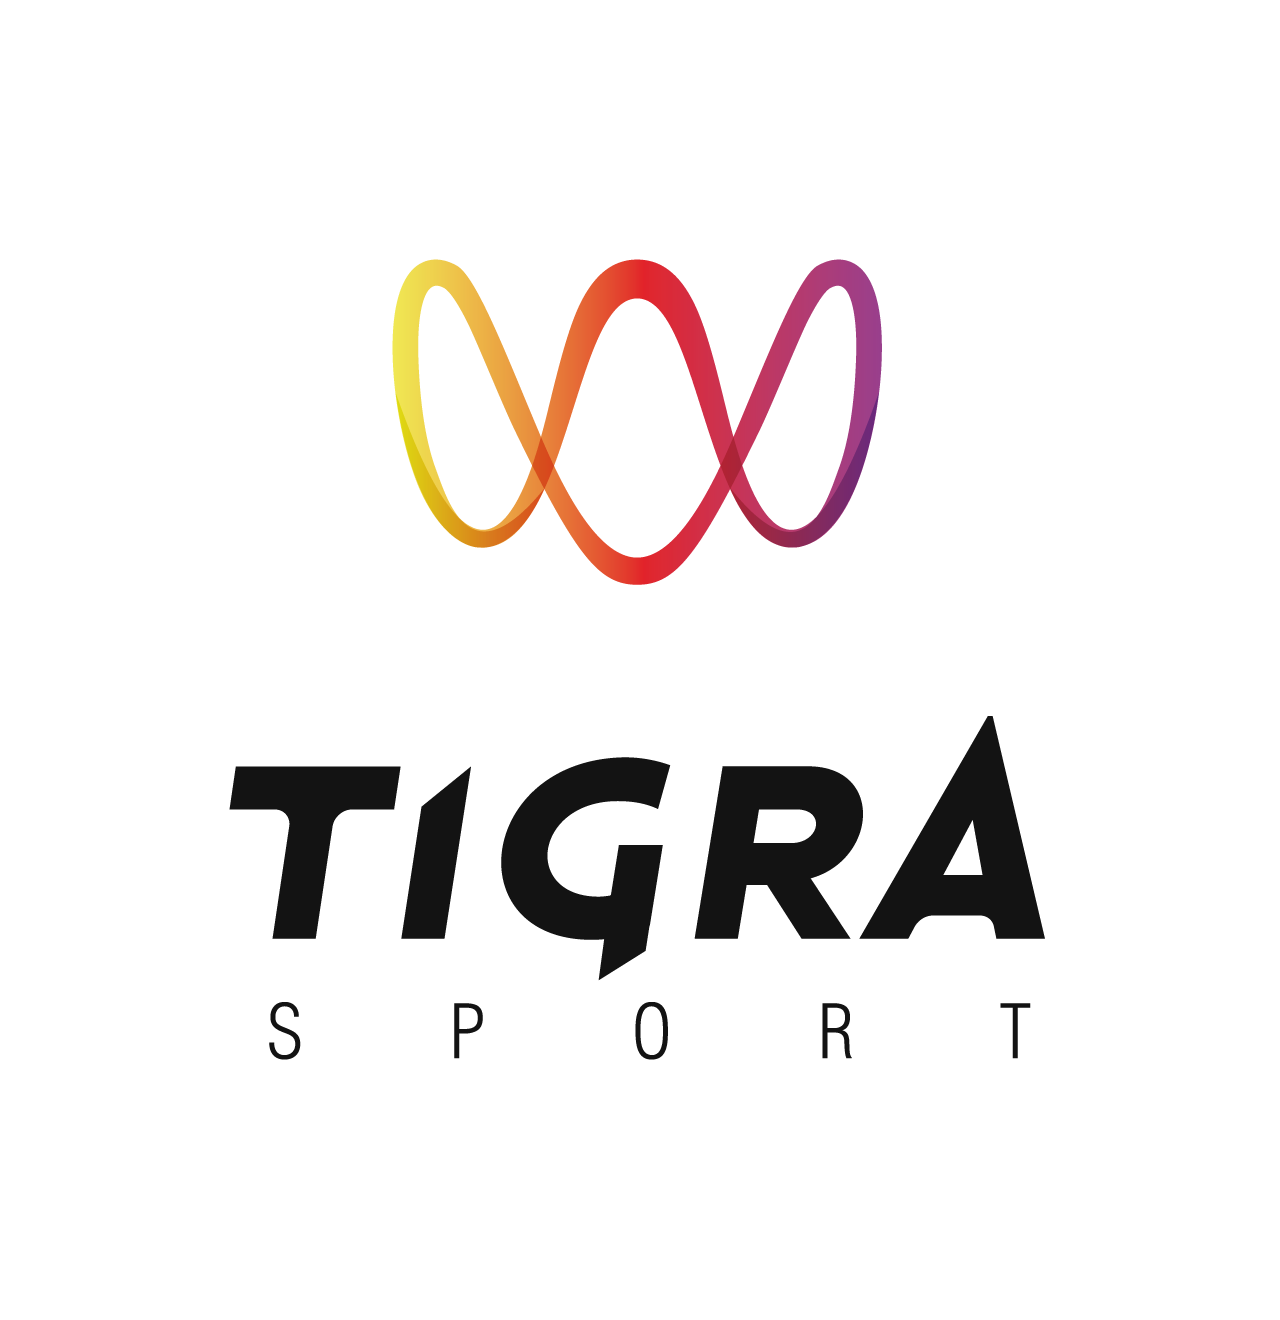 Tigra sport - exkluzivní distributor